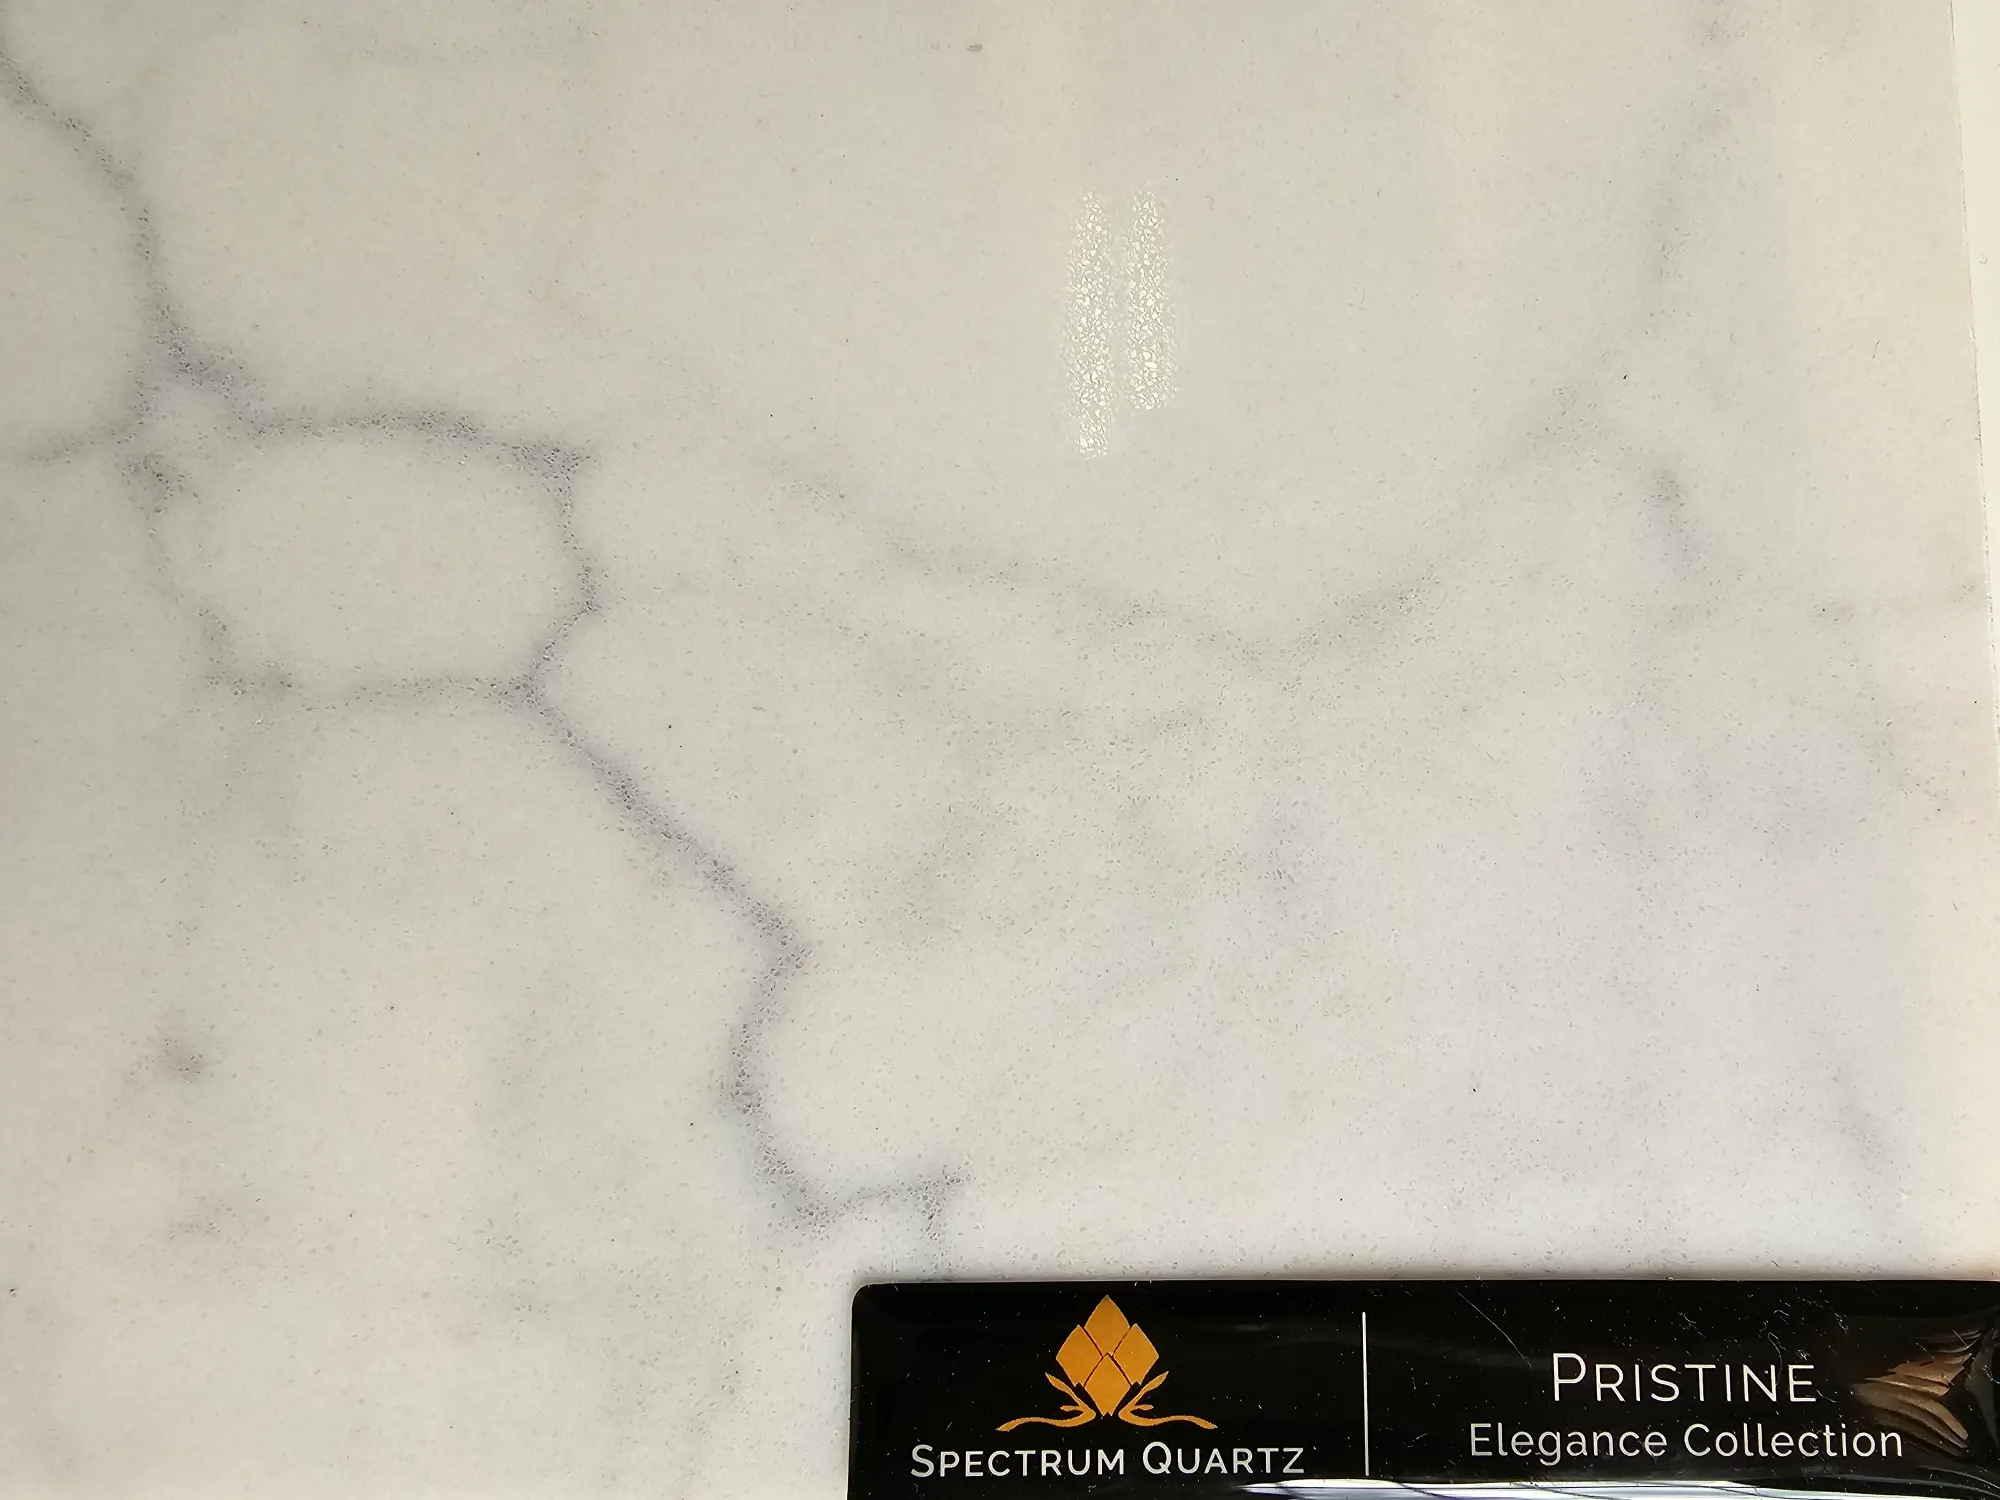 Pristine spectrum quartz countertop